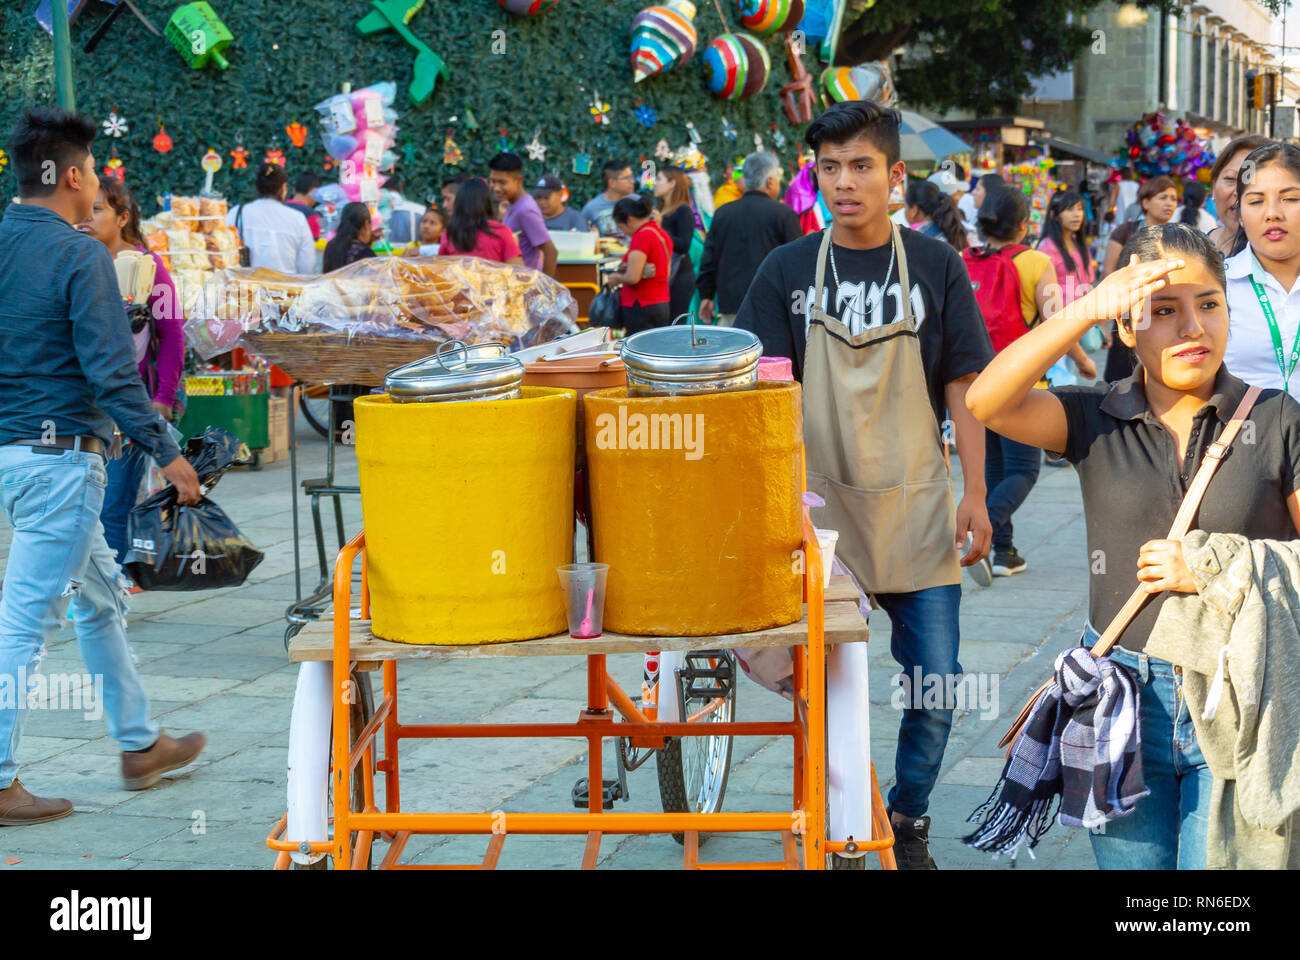 La vente des aliments de rue l'homme local dans la rue, Oaxaca, Mexique Banque D'Images